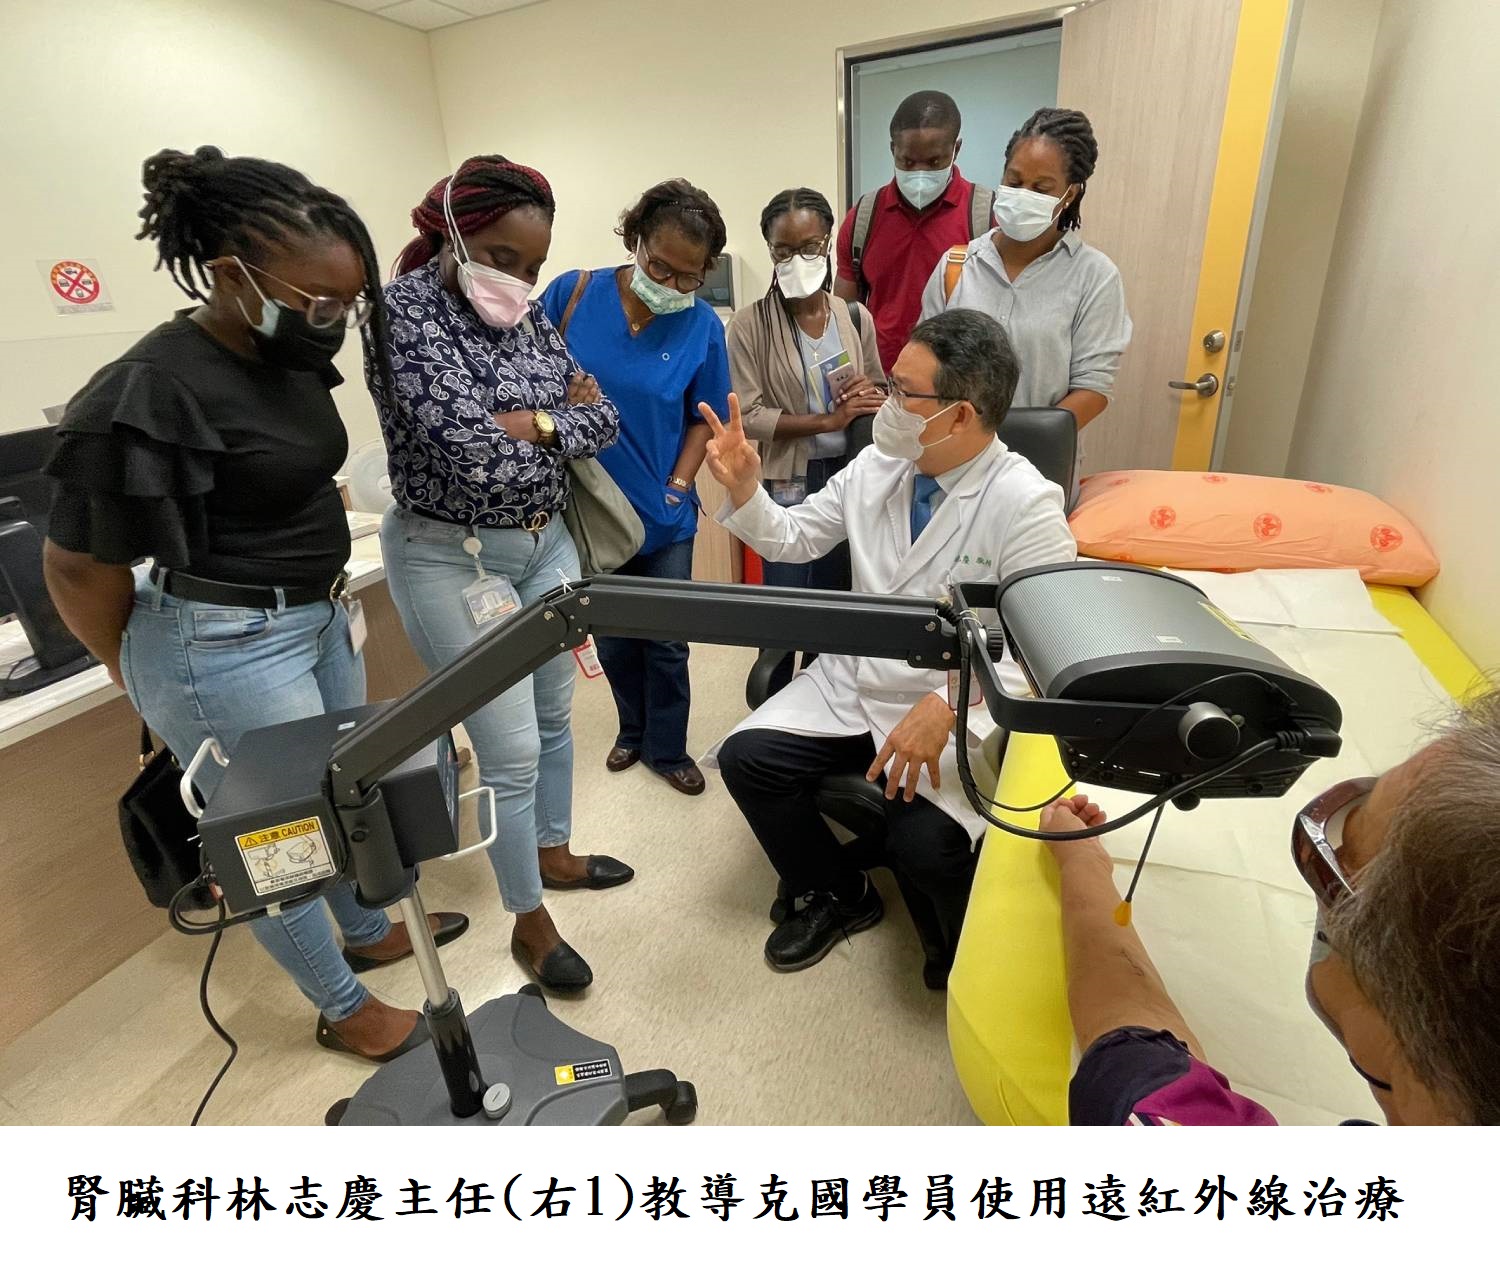 腎臟科林志慶主任(右1)教導克國學員使用遠紅外線治療儀